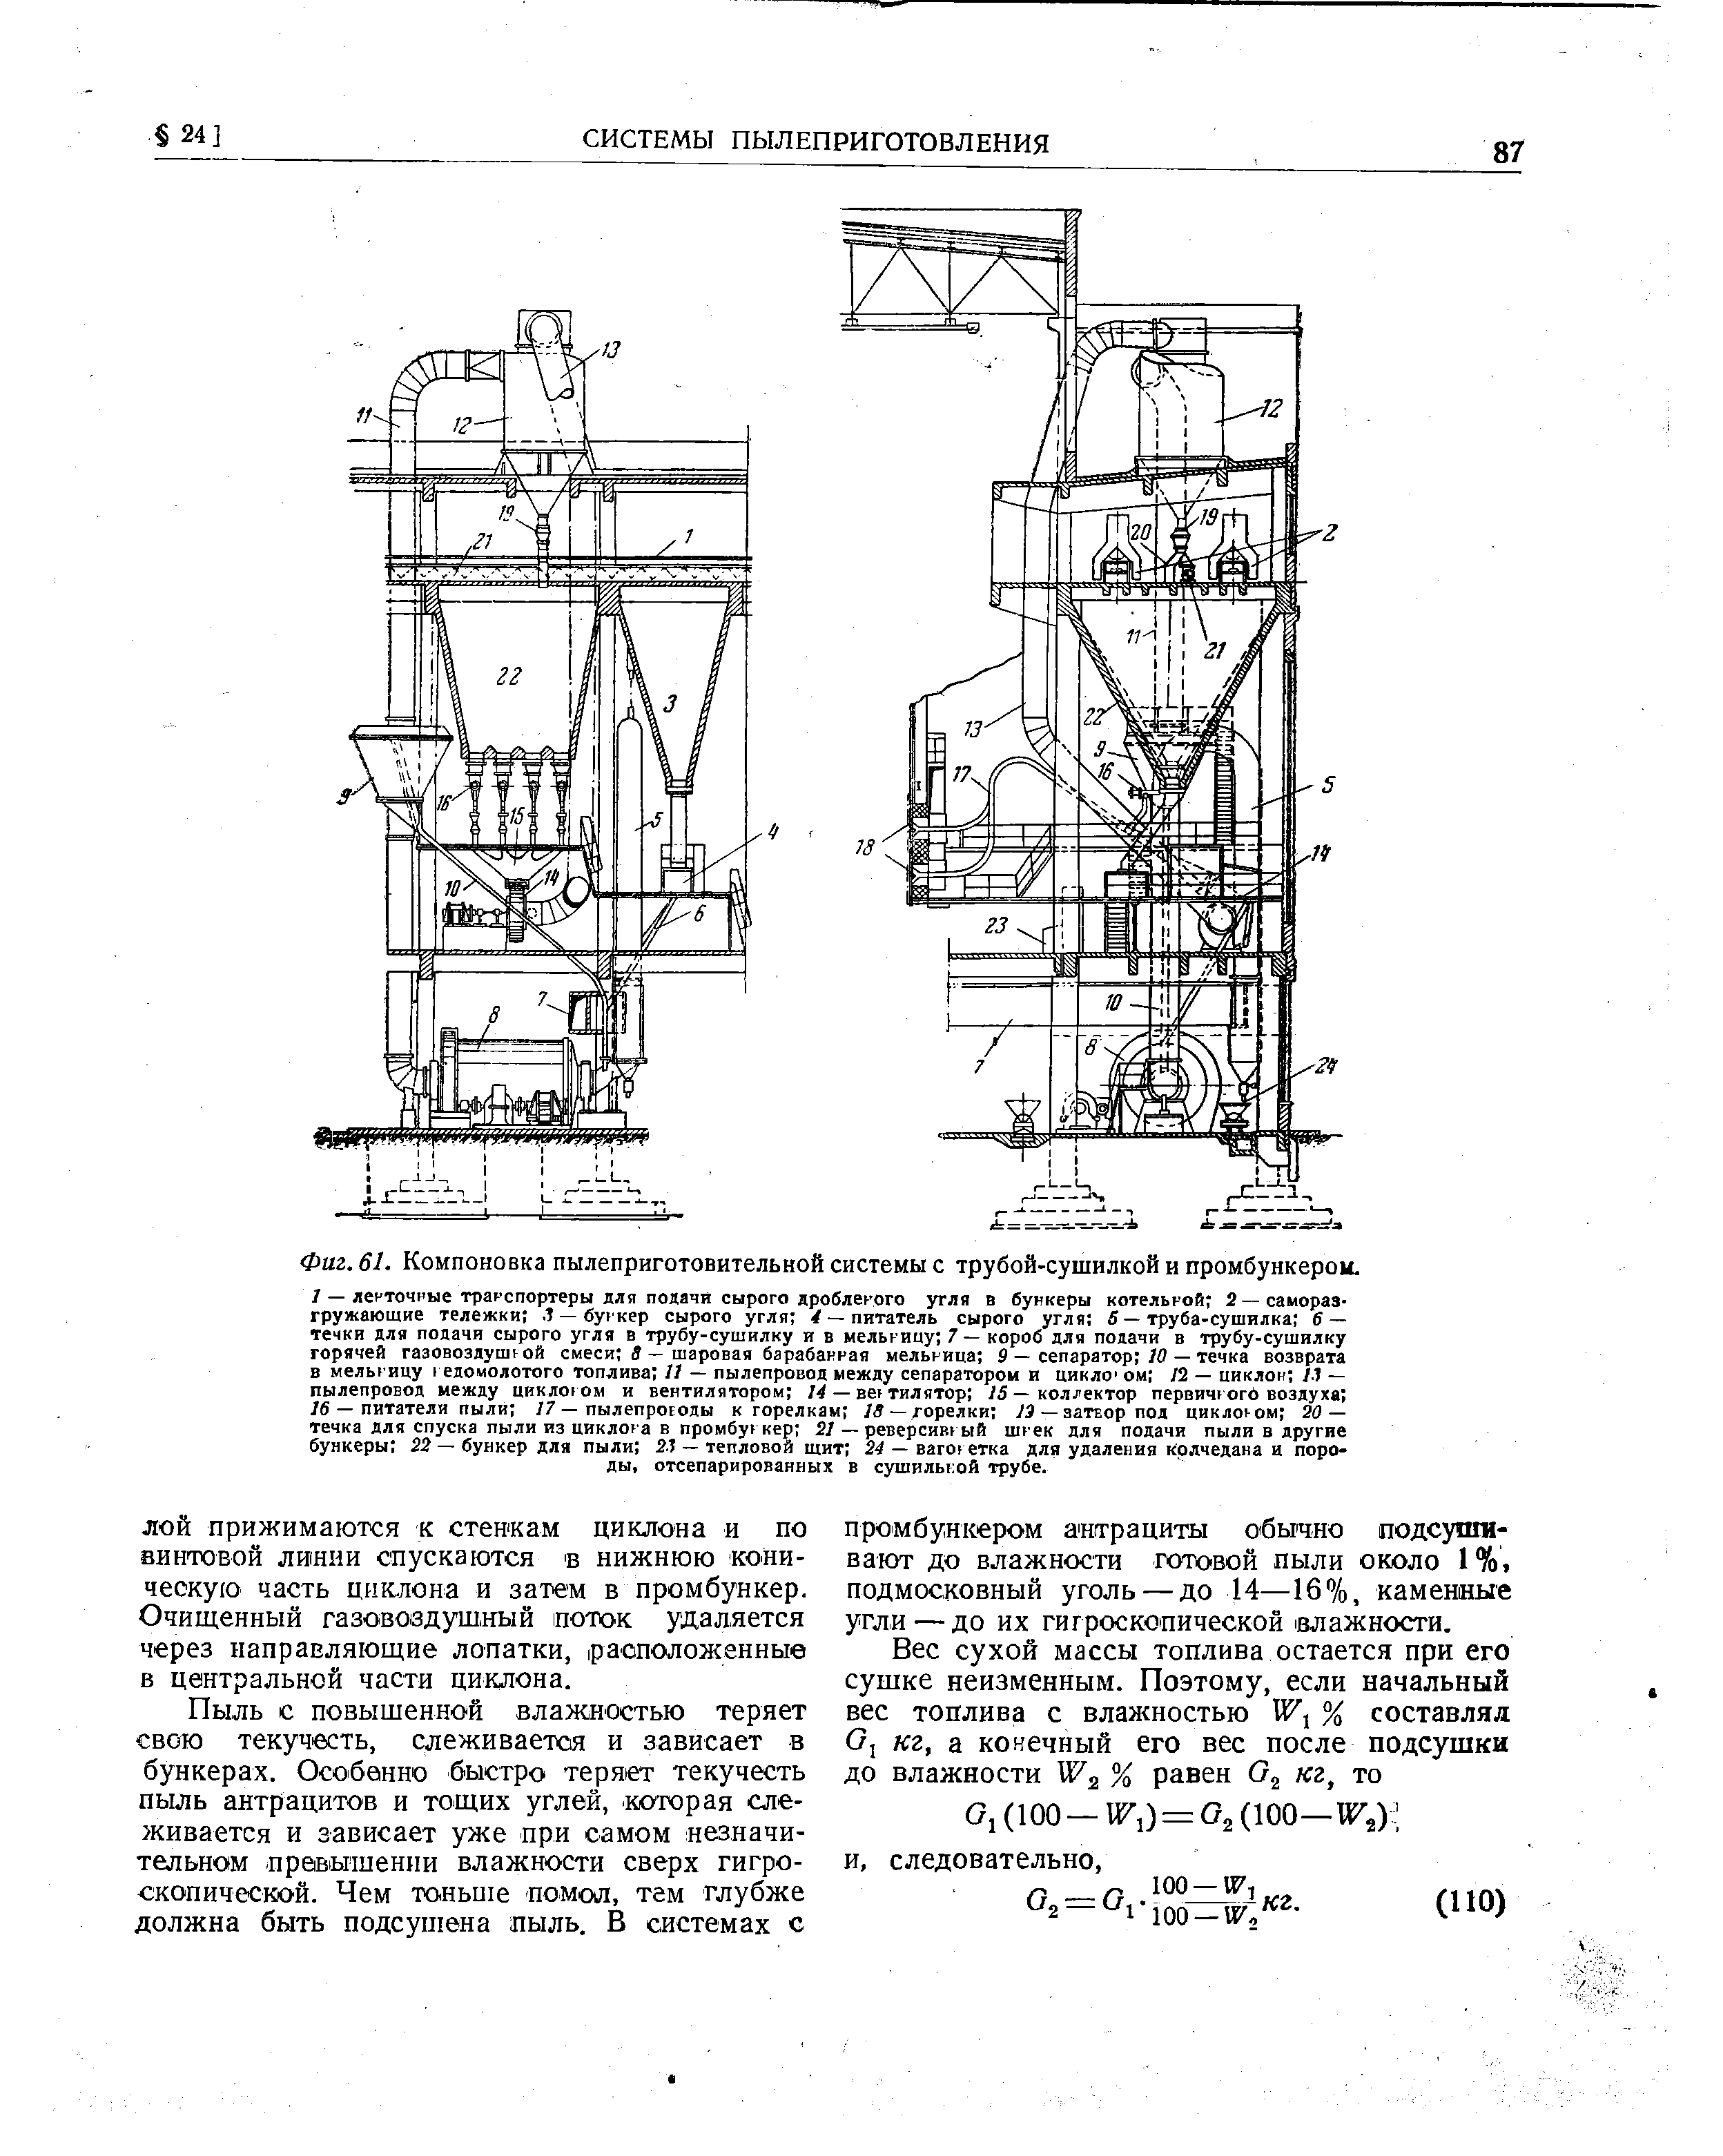 Фиг. 61. Компоновка пылеприготовительной системы с трубой-сушилкой и промбункерои.
